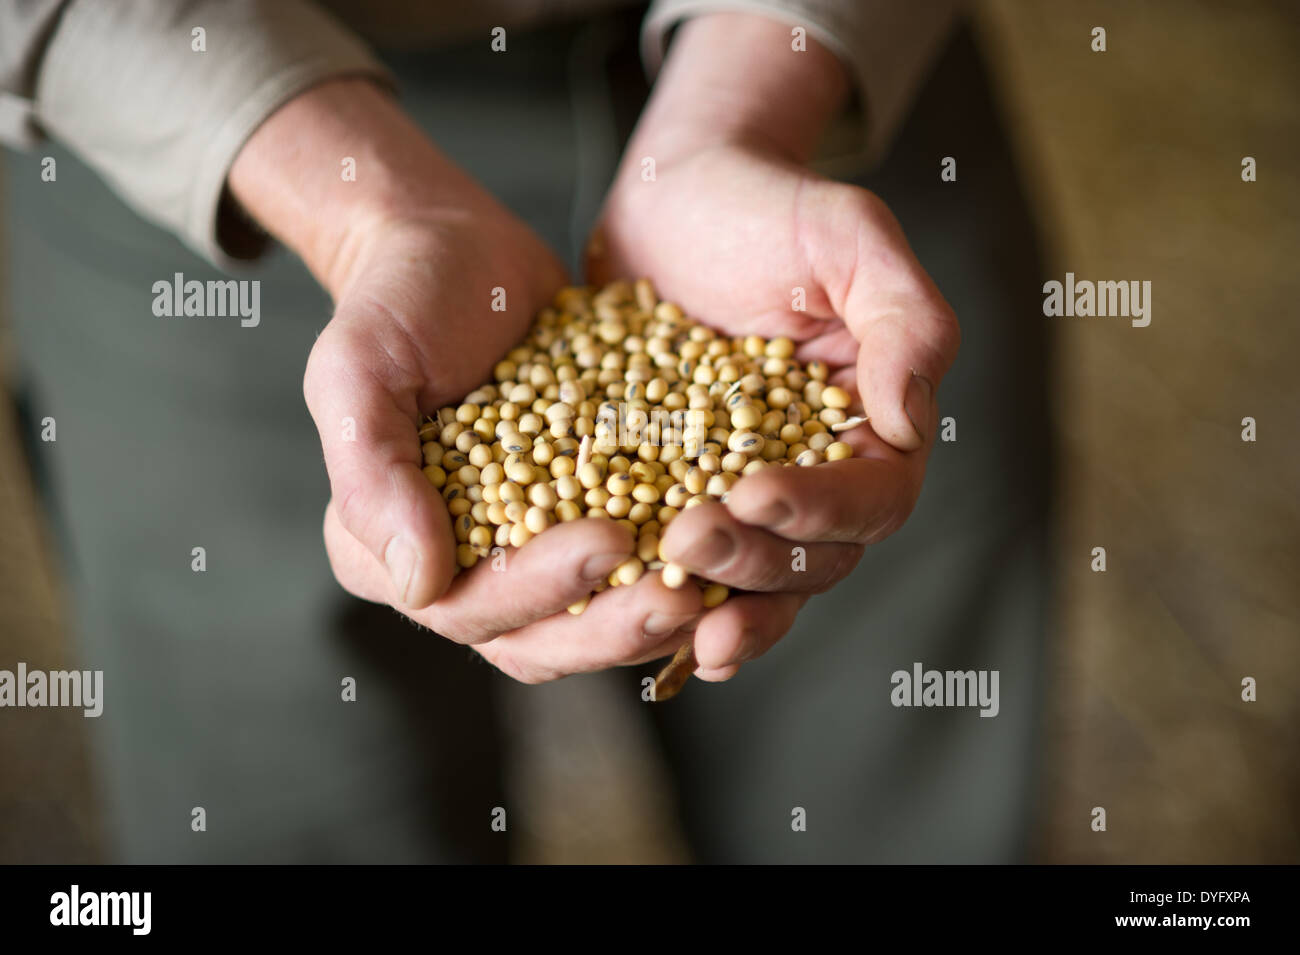 Mani tenendo i semi di soia Foto Stock